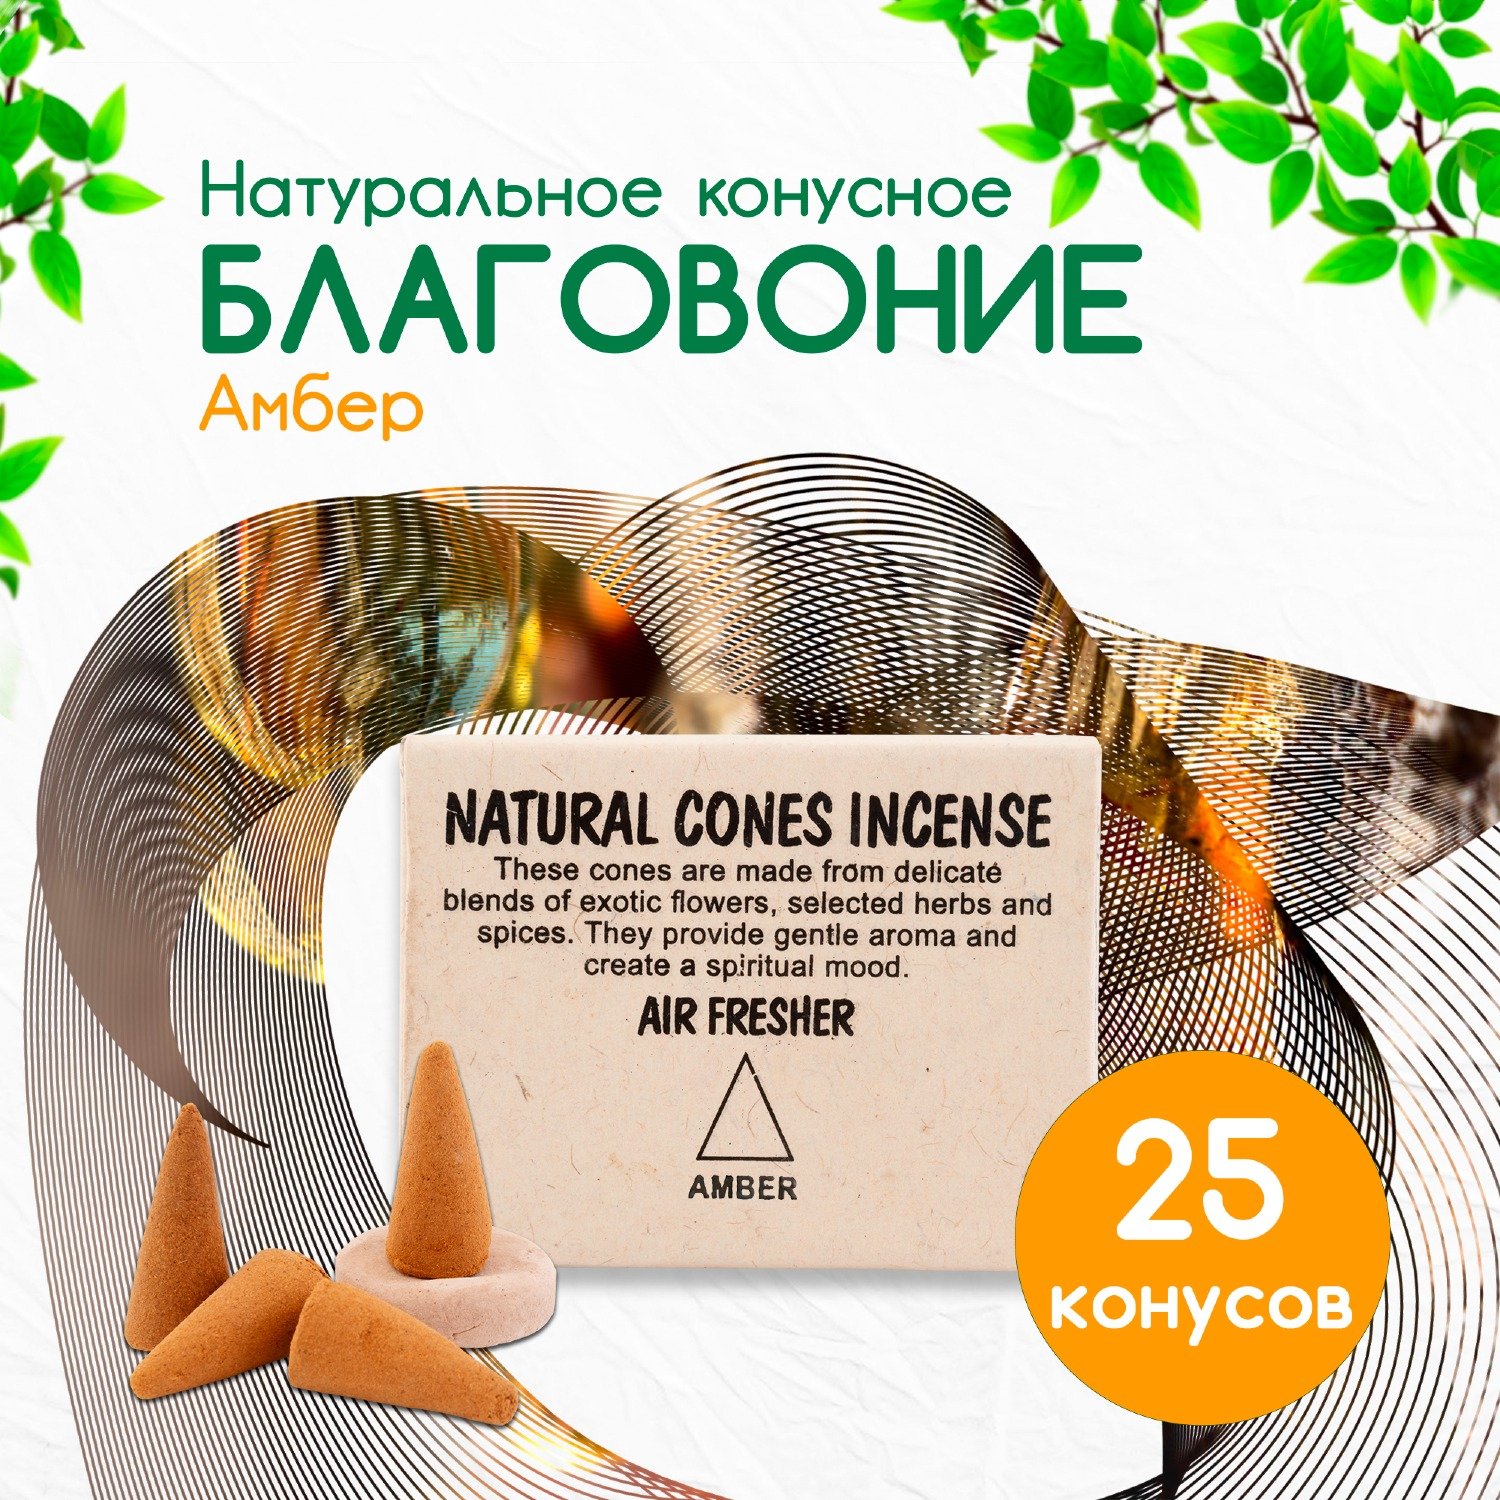 Купить Natural Cones Incense Amber (Натуральное конусное благовоние Амбер), 25 конусов по 3 см в интернет-магазине Ариаварта